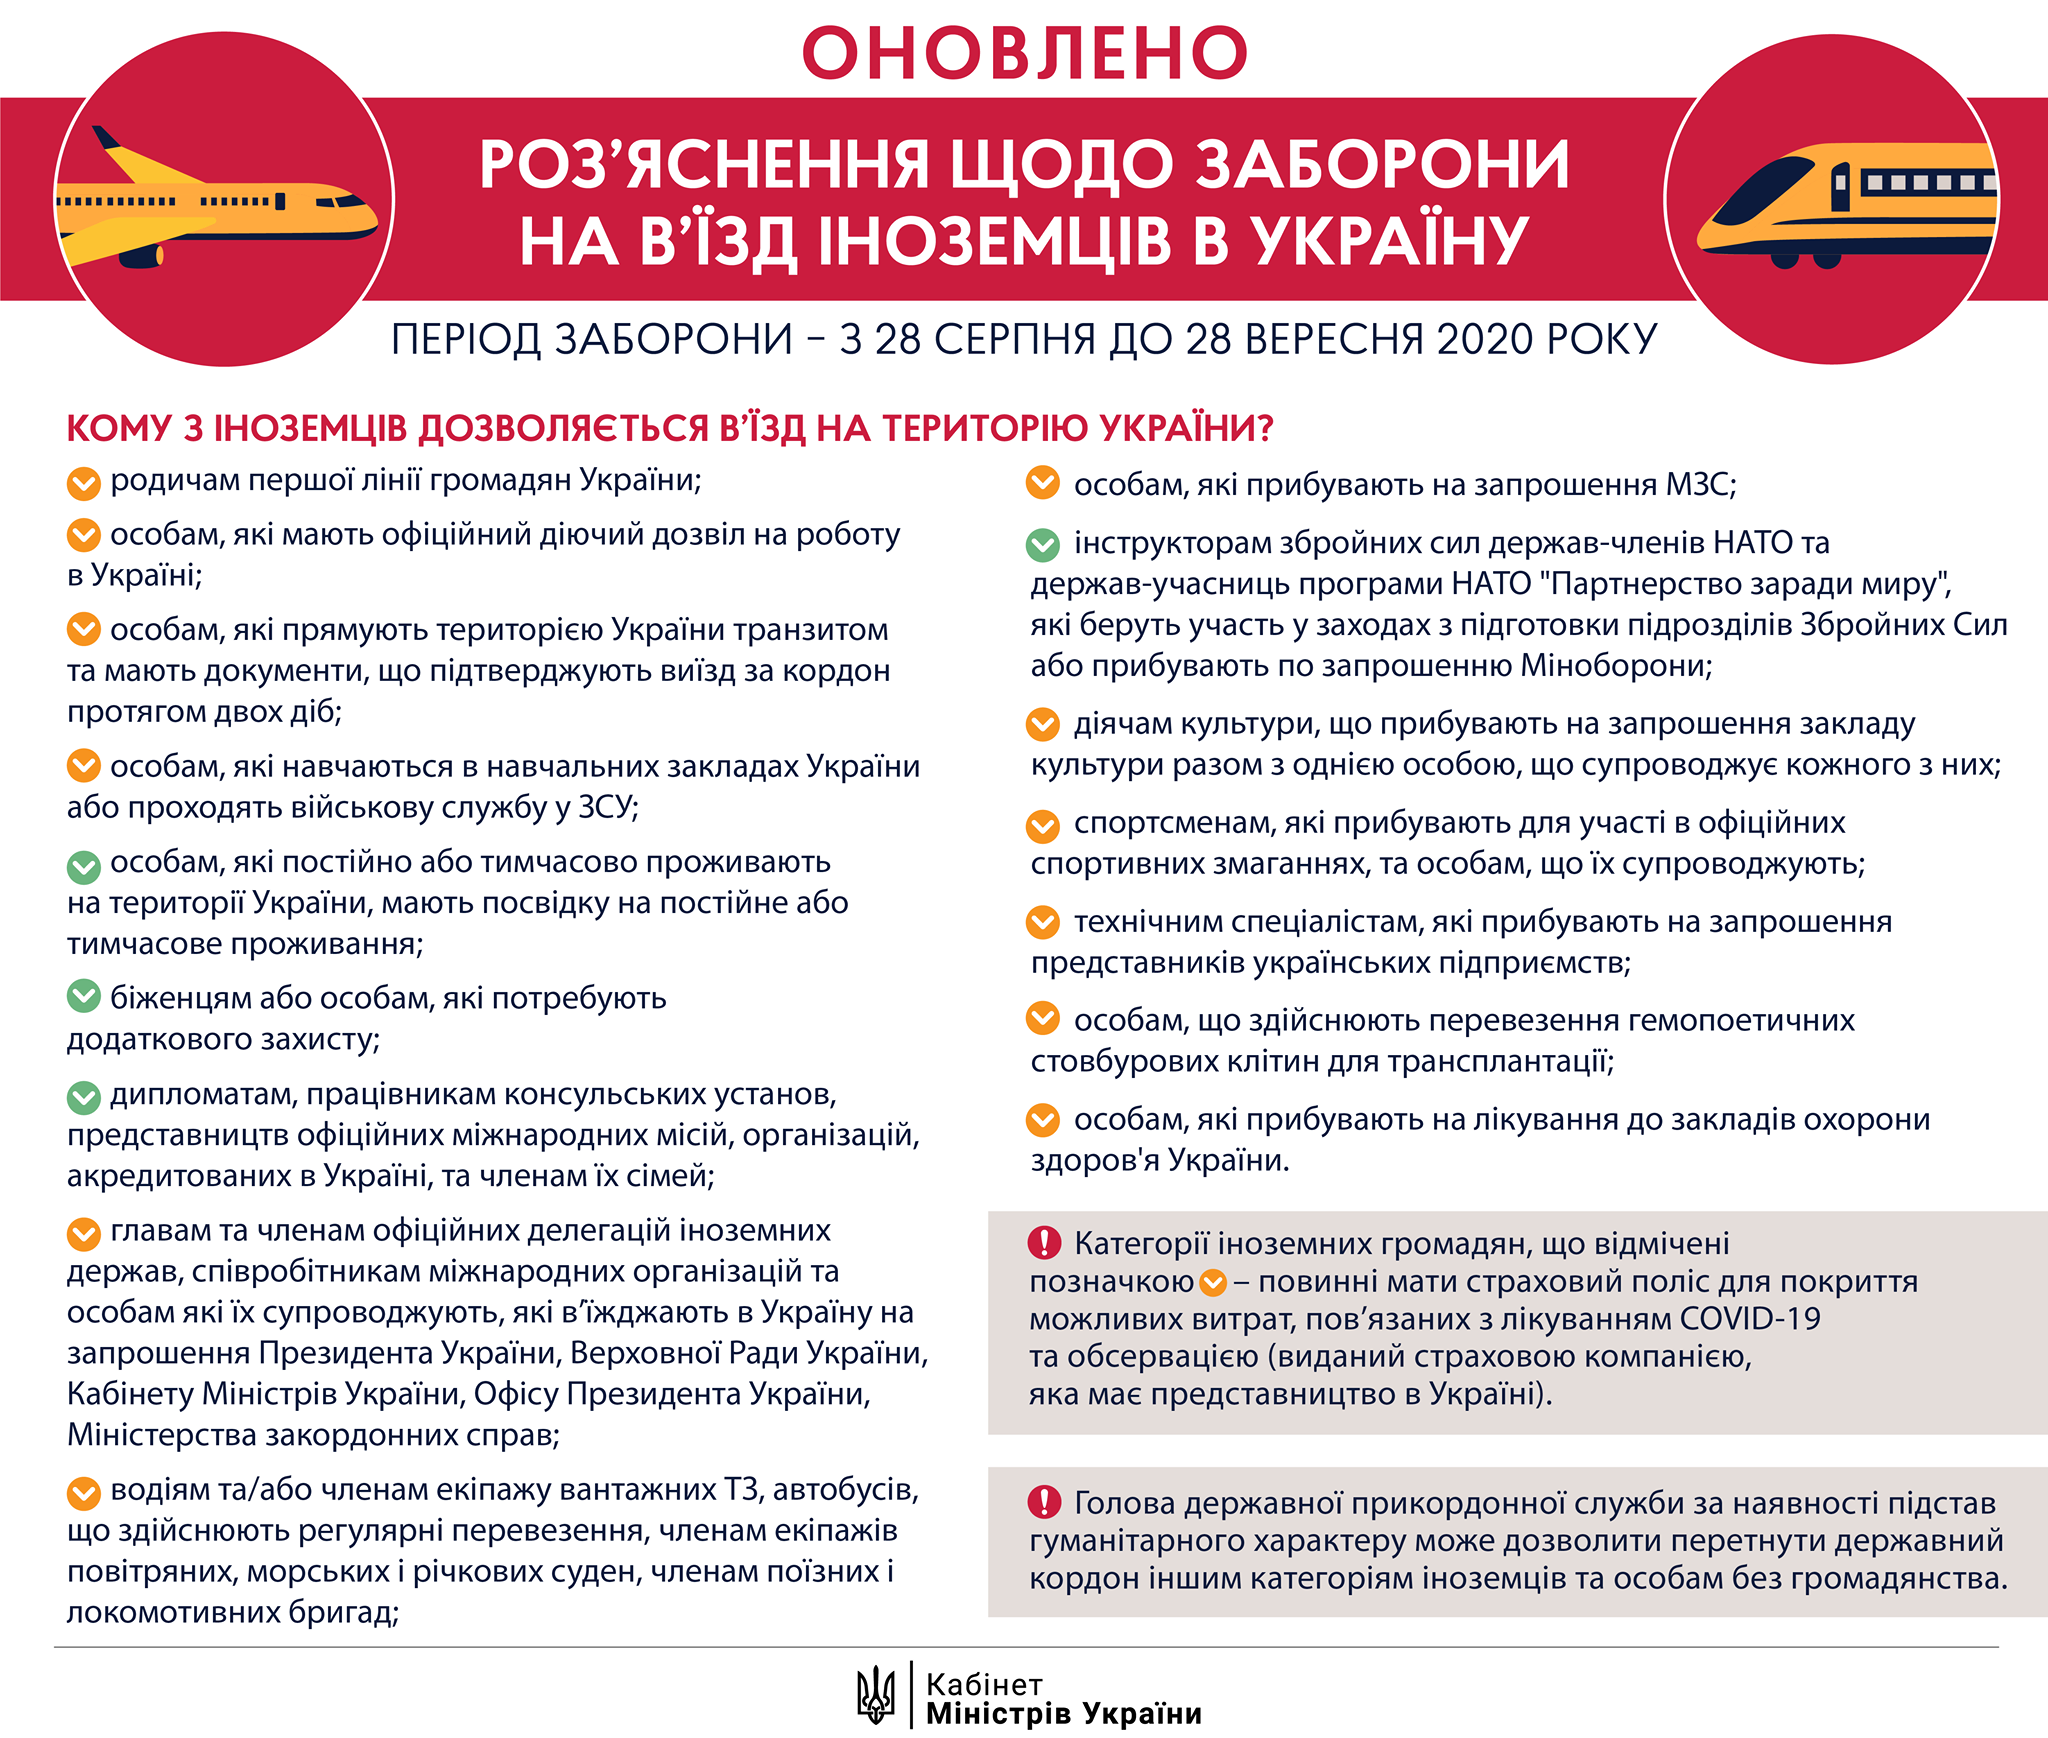 Список иностранцев, которым можно въезжать в Украину в сентябре